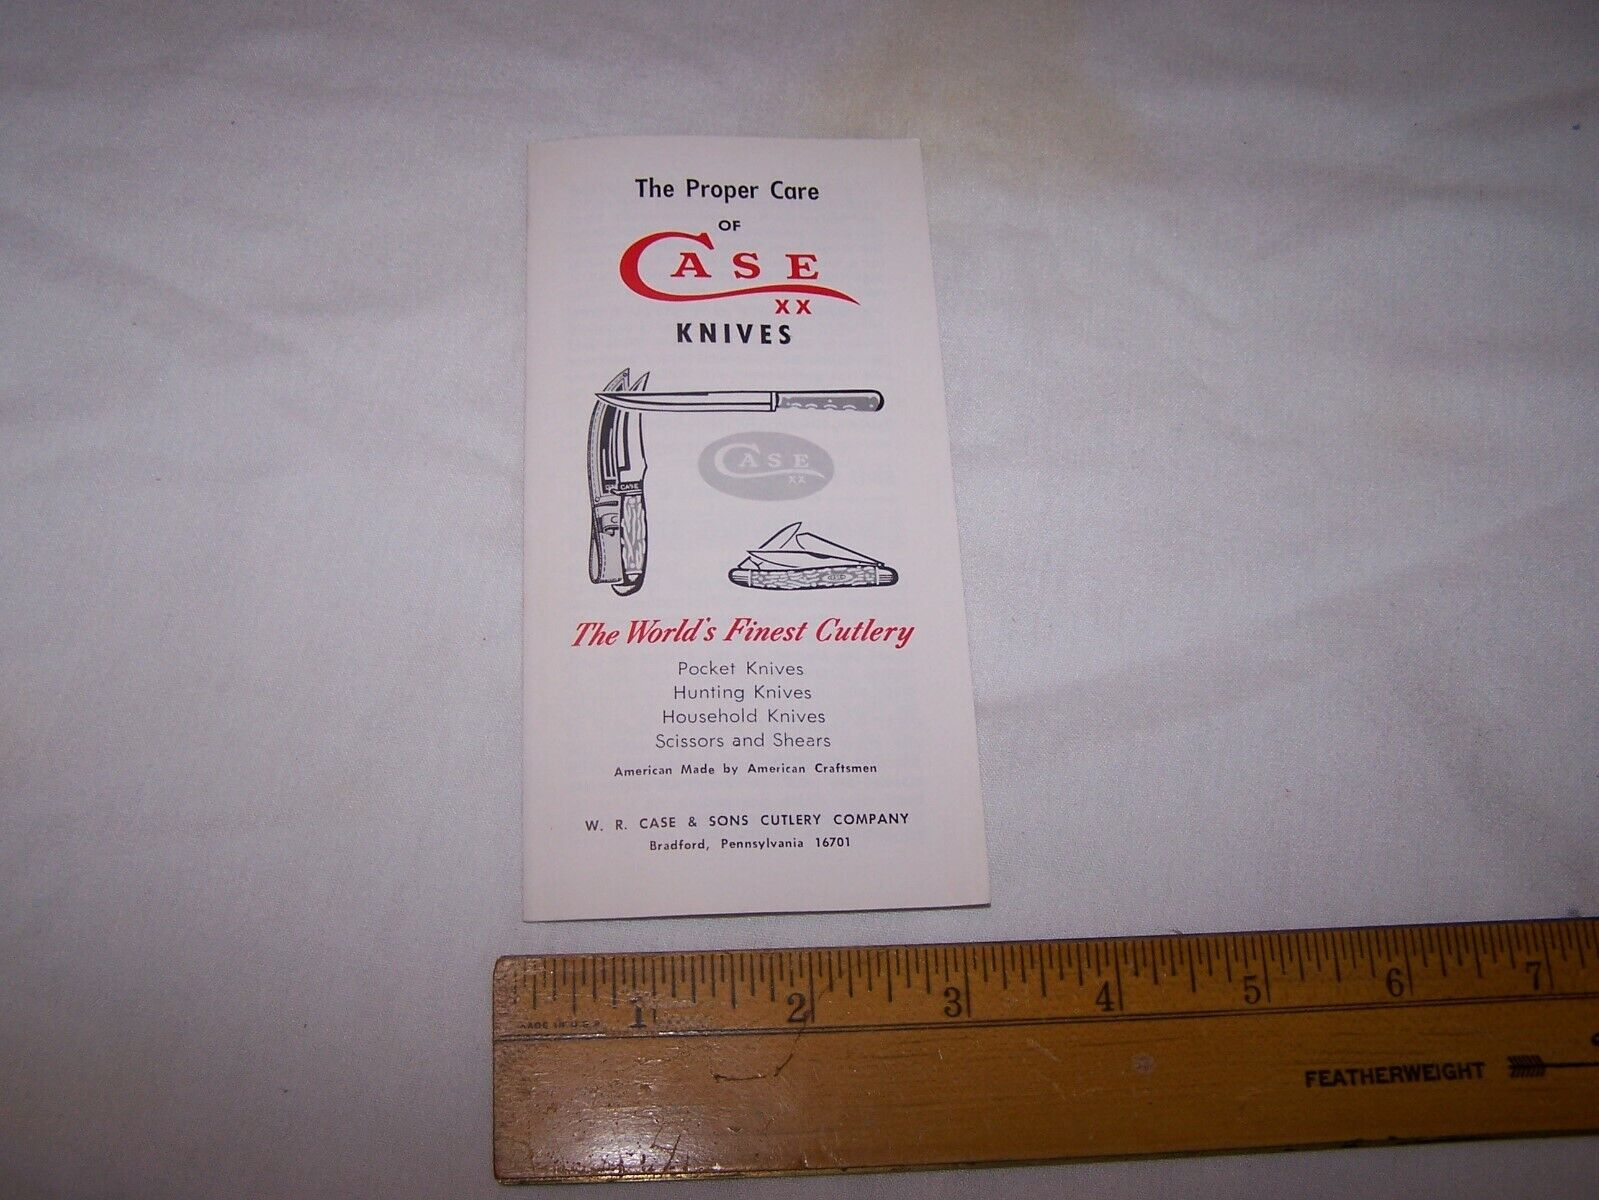 1976 Case Xx Knives Pamphlet - Proper Care